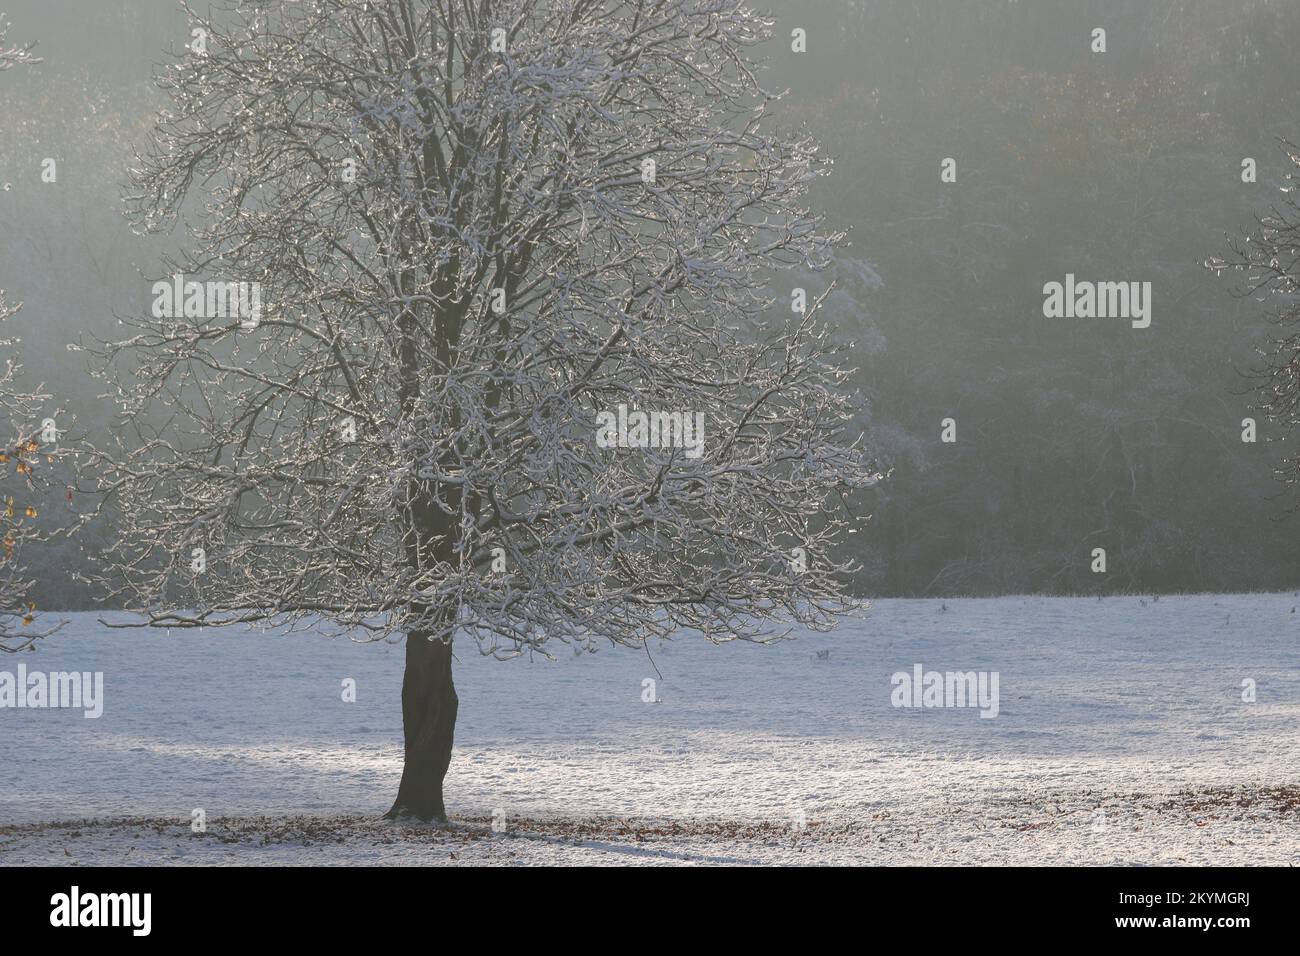 Scène d'hiver, arbre recouvert de givre sur un pré blanc gelé sur un fond sombre et brumeux, espace de copie Banque D'Images